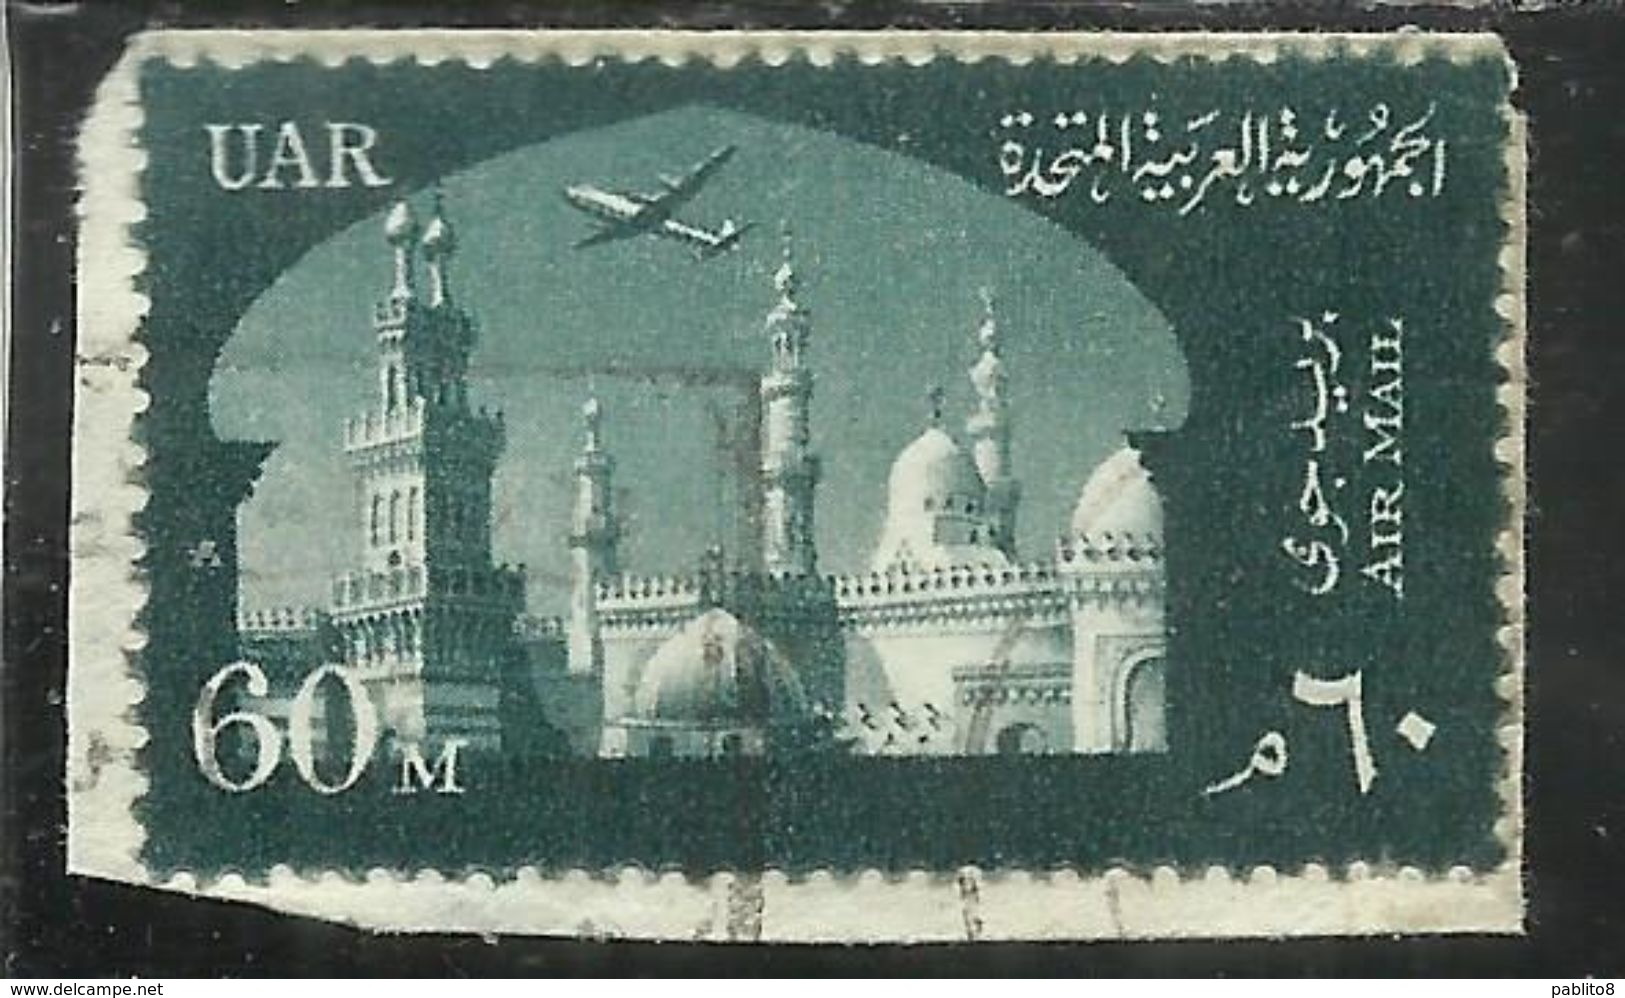 UAR EGYPT EGITTO 1958 AIR MAIL POSTA AEREA AL AZHAR UNIVERSITY UNIVERSITA' 60m USATO USED OBLITERE' - Posta Aerea